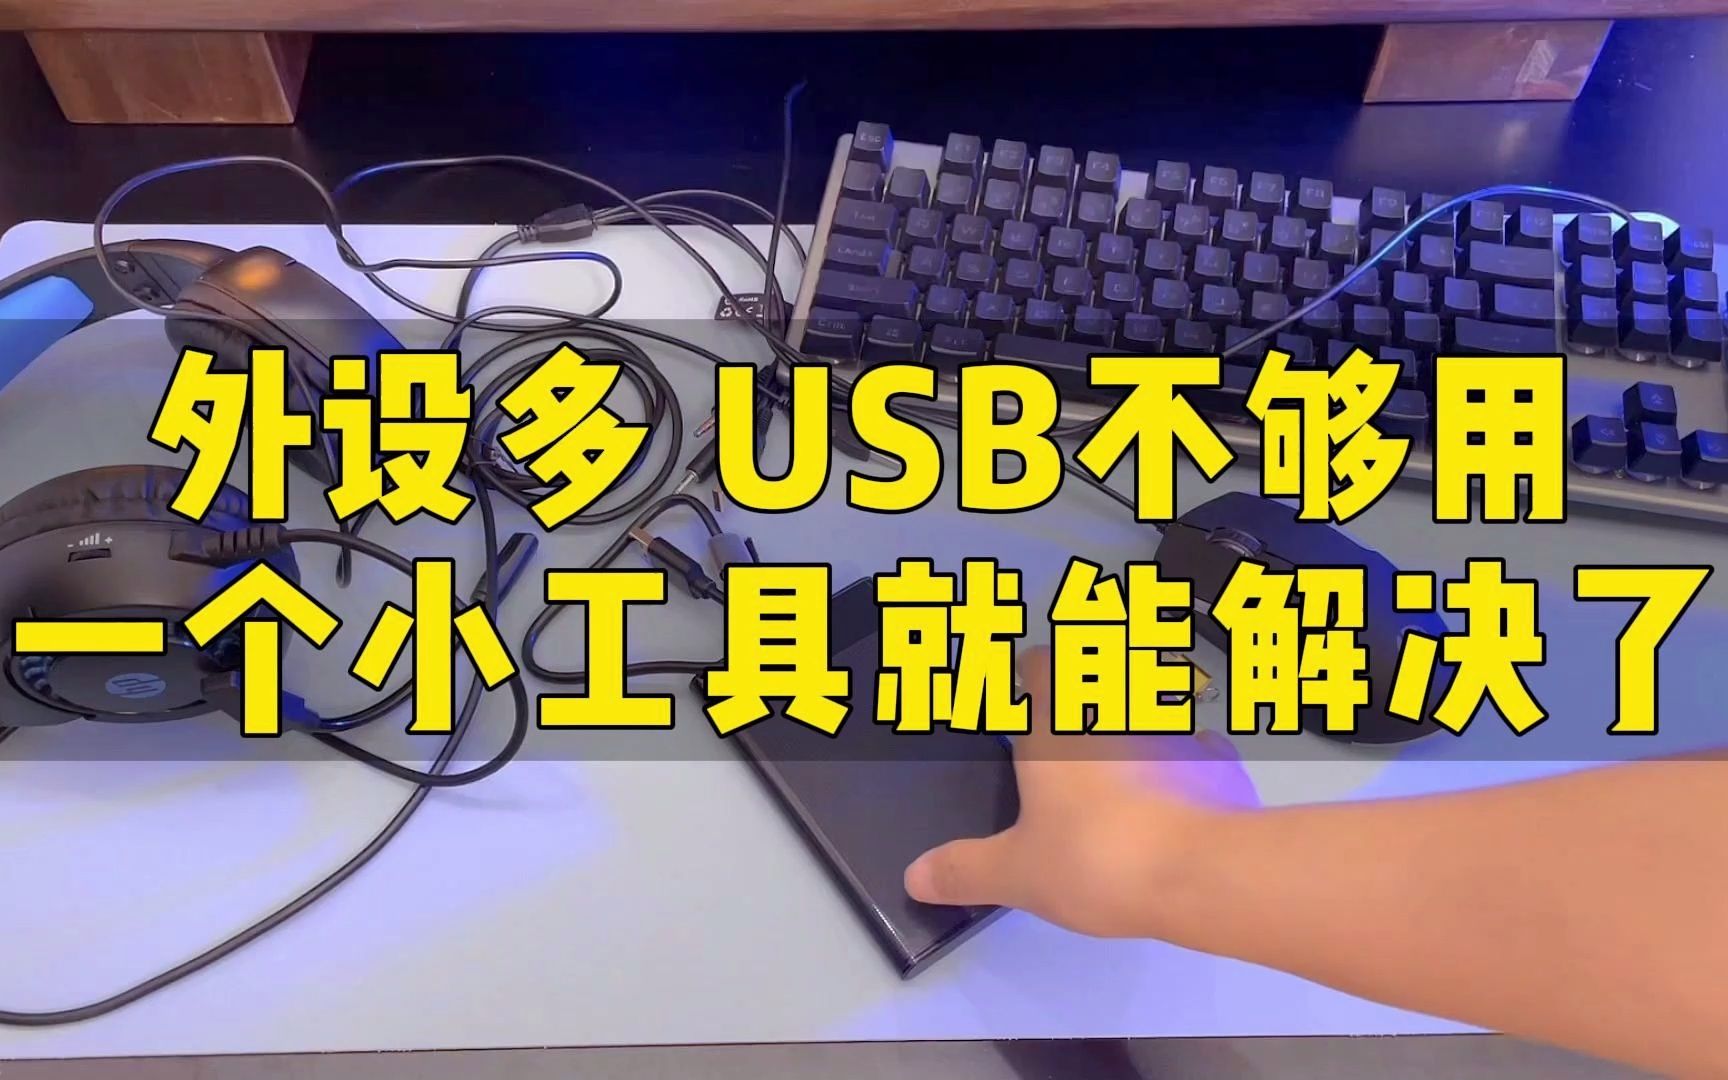 USB外设太多，电脑接口不够用？试试这个优越者4口USB3.0分线器